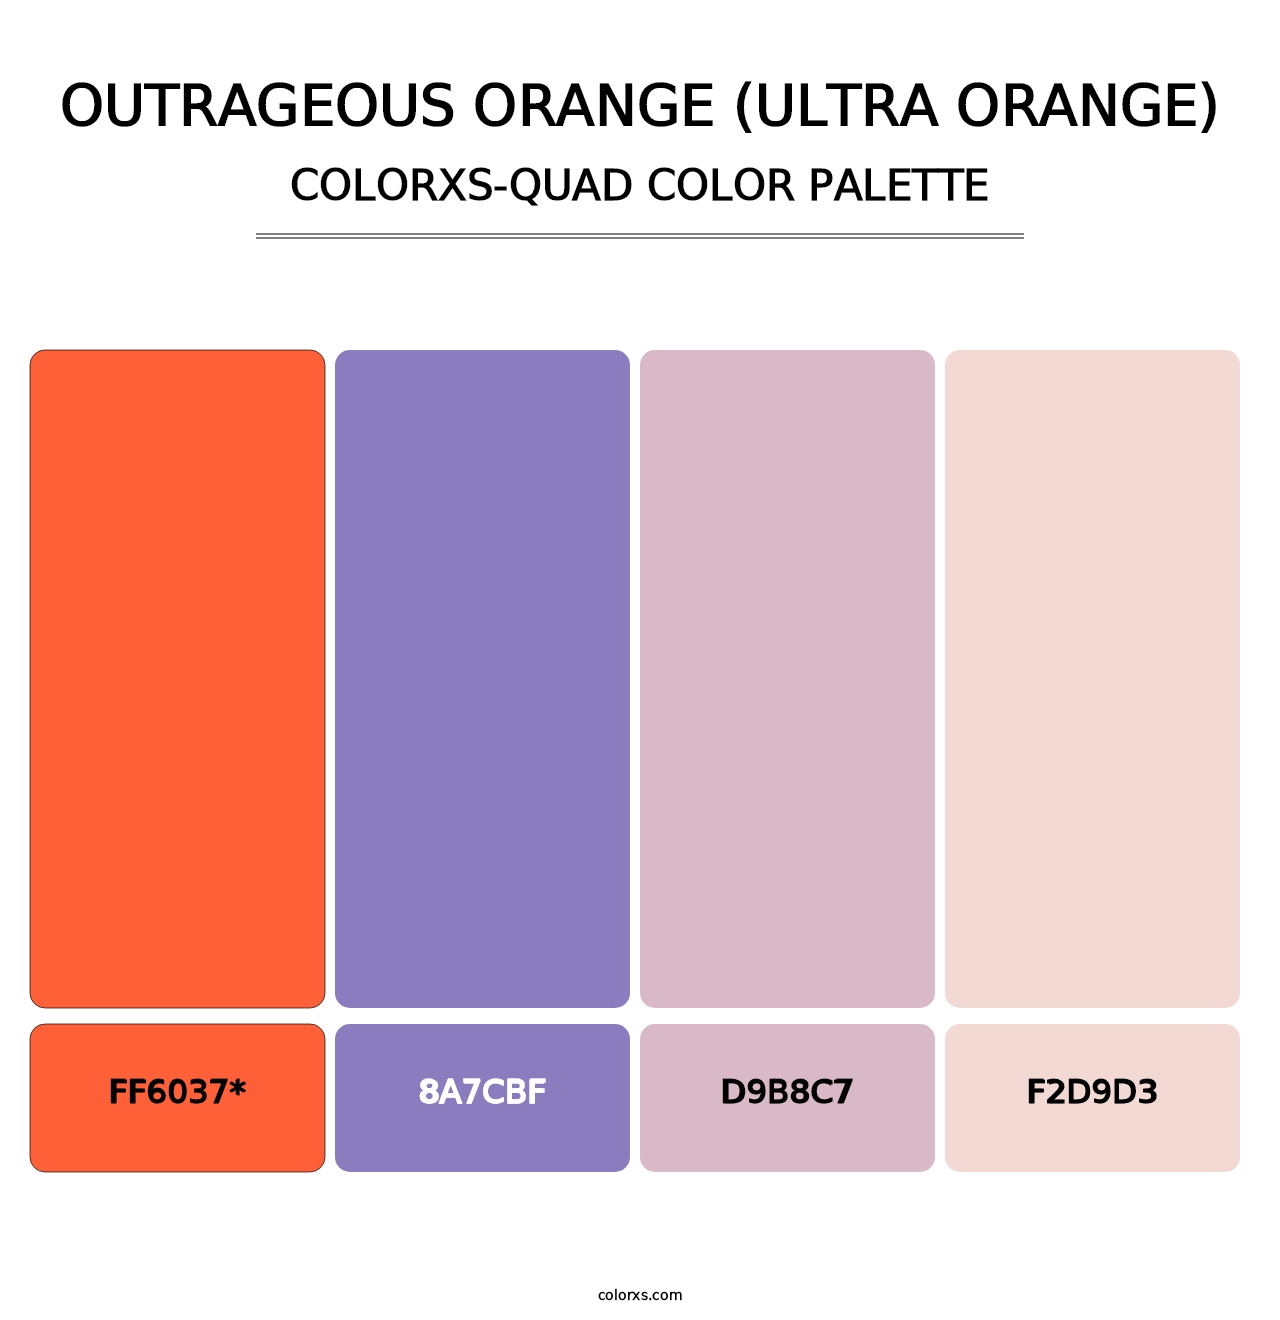 Outrageous Orange (Ultra Orange) - Colorxs Quad Palette